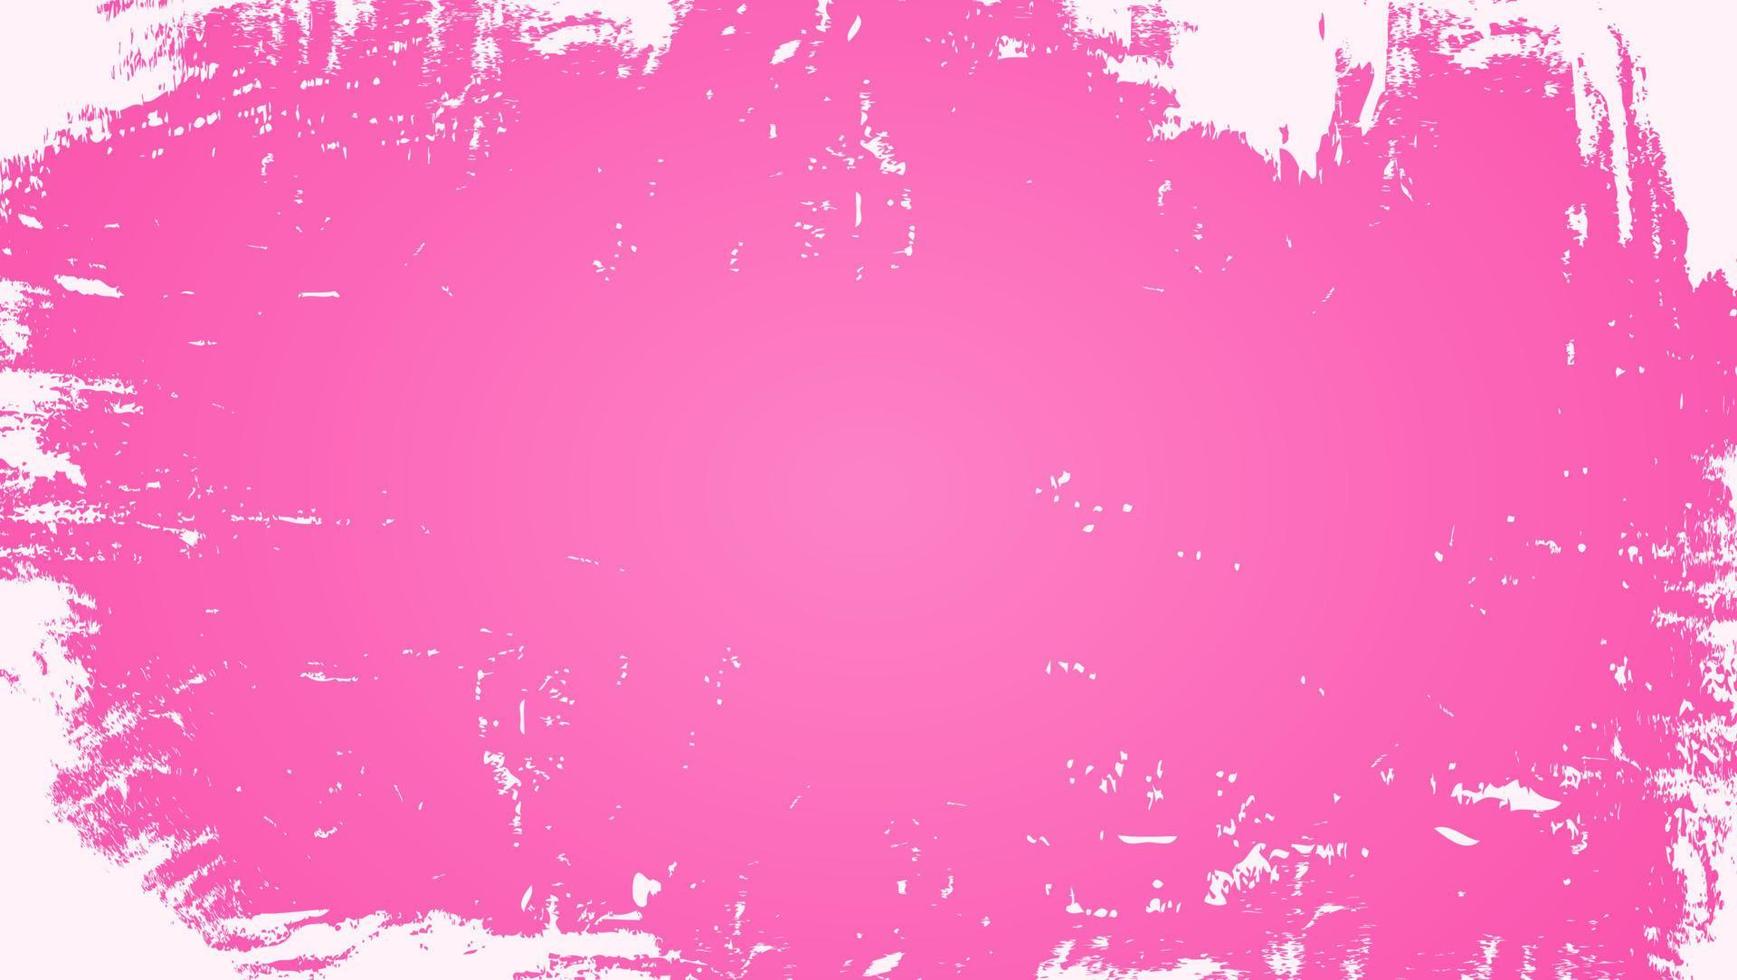 textura de parede grunge envelhecida abstrata em fundo rosa vetor